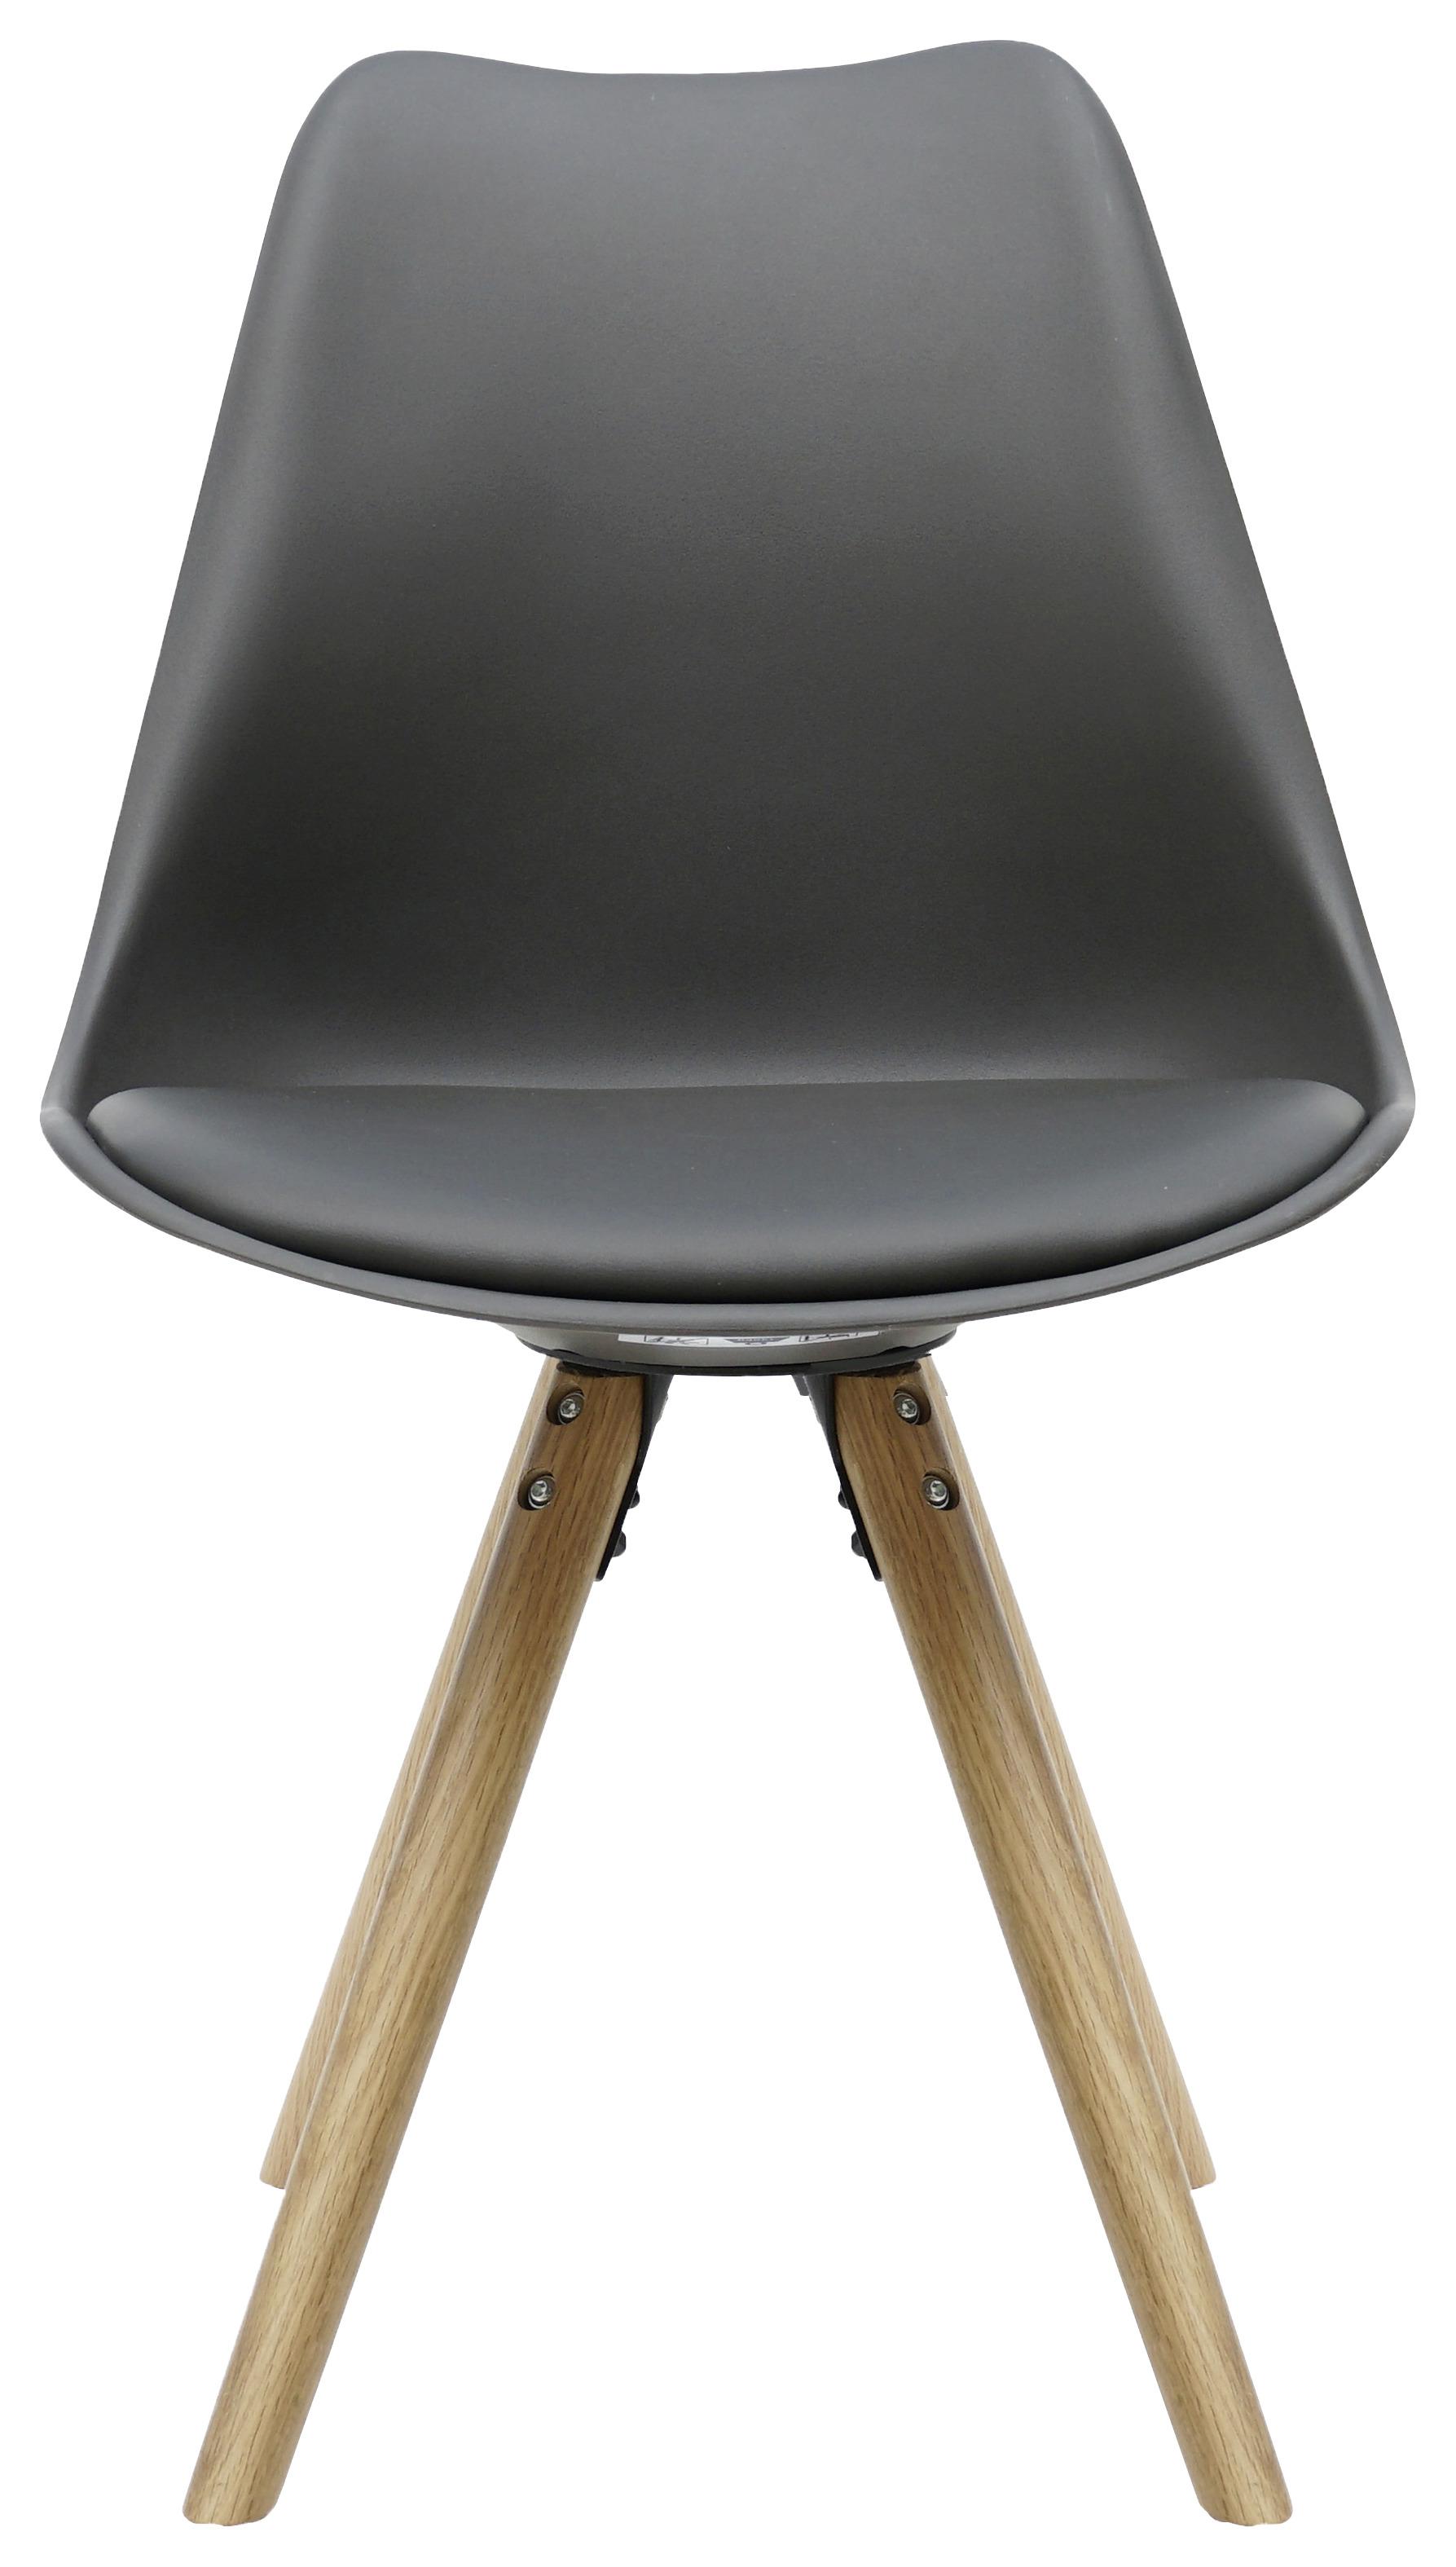 Stuhl in Grau - Eichefarben/Grau, MODERN, Holz/Kunststoff (48/81/57cm) - Based